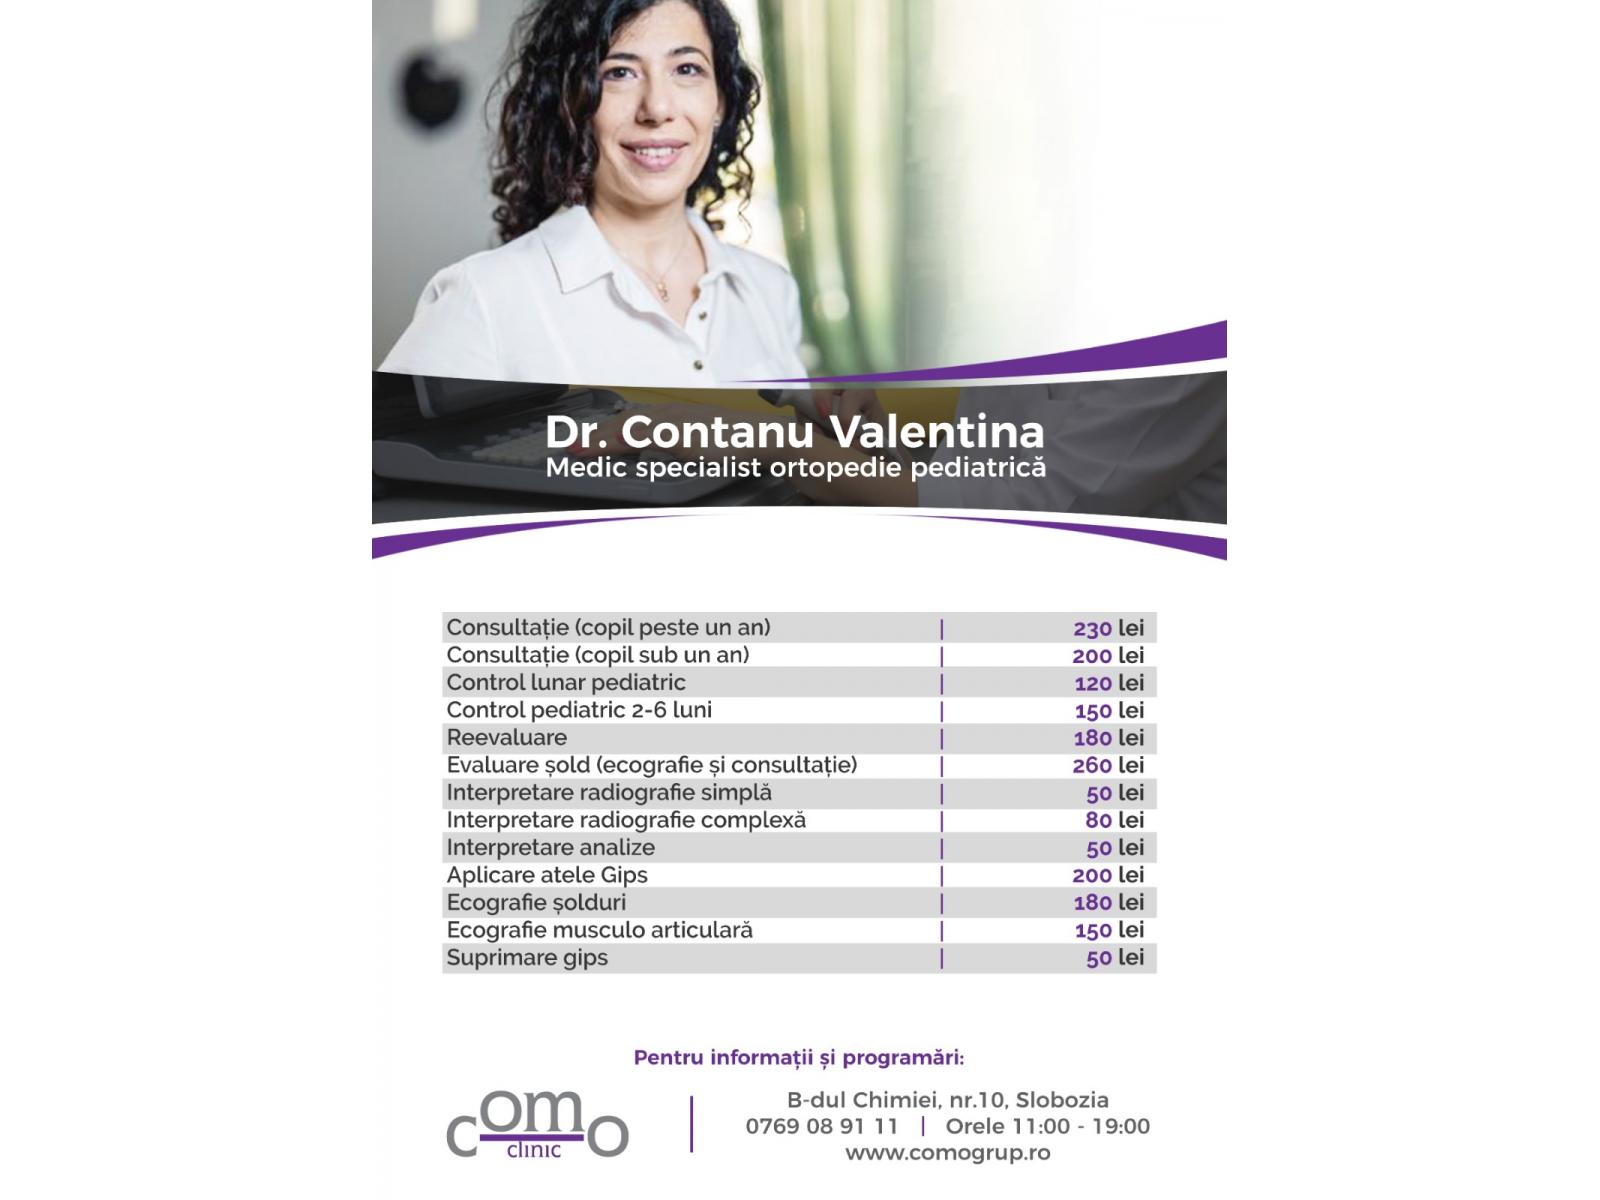 COMO Clinic - lista-preturi-ortopedie-pediatrica.jpg